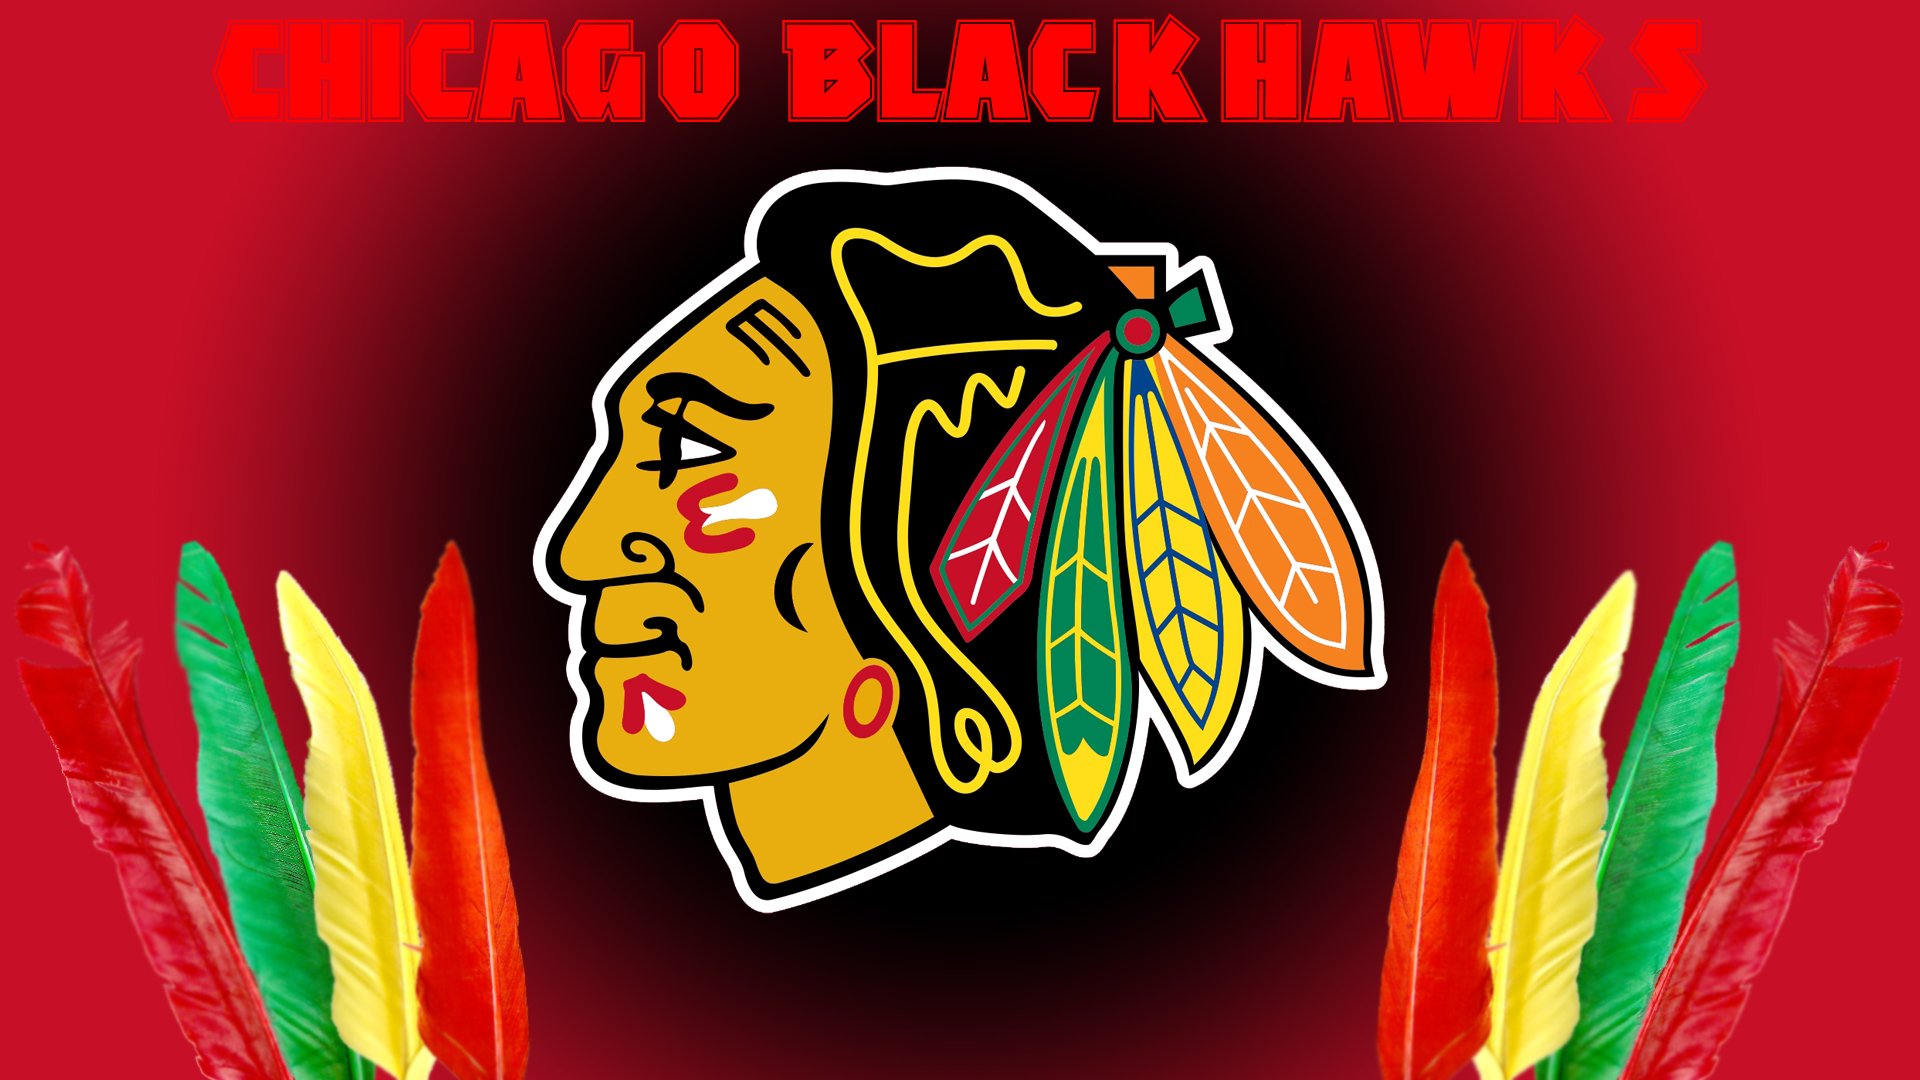 Chicago Blackhawks Nhl Hockey Wallpaper